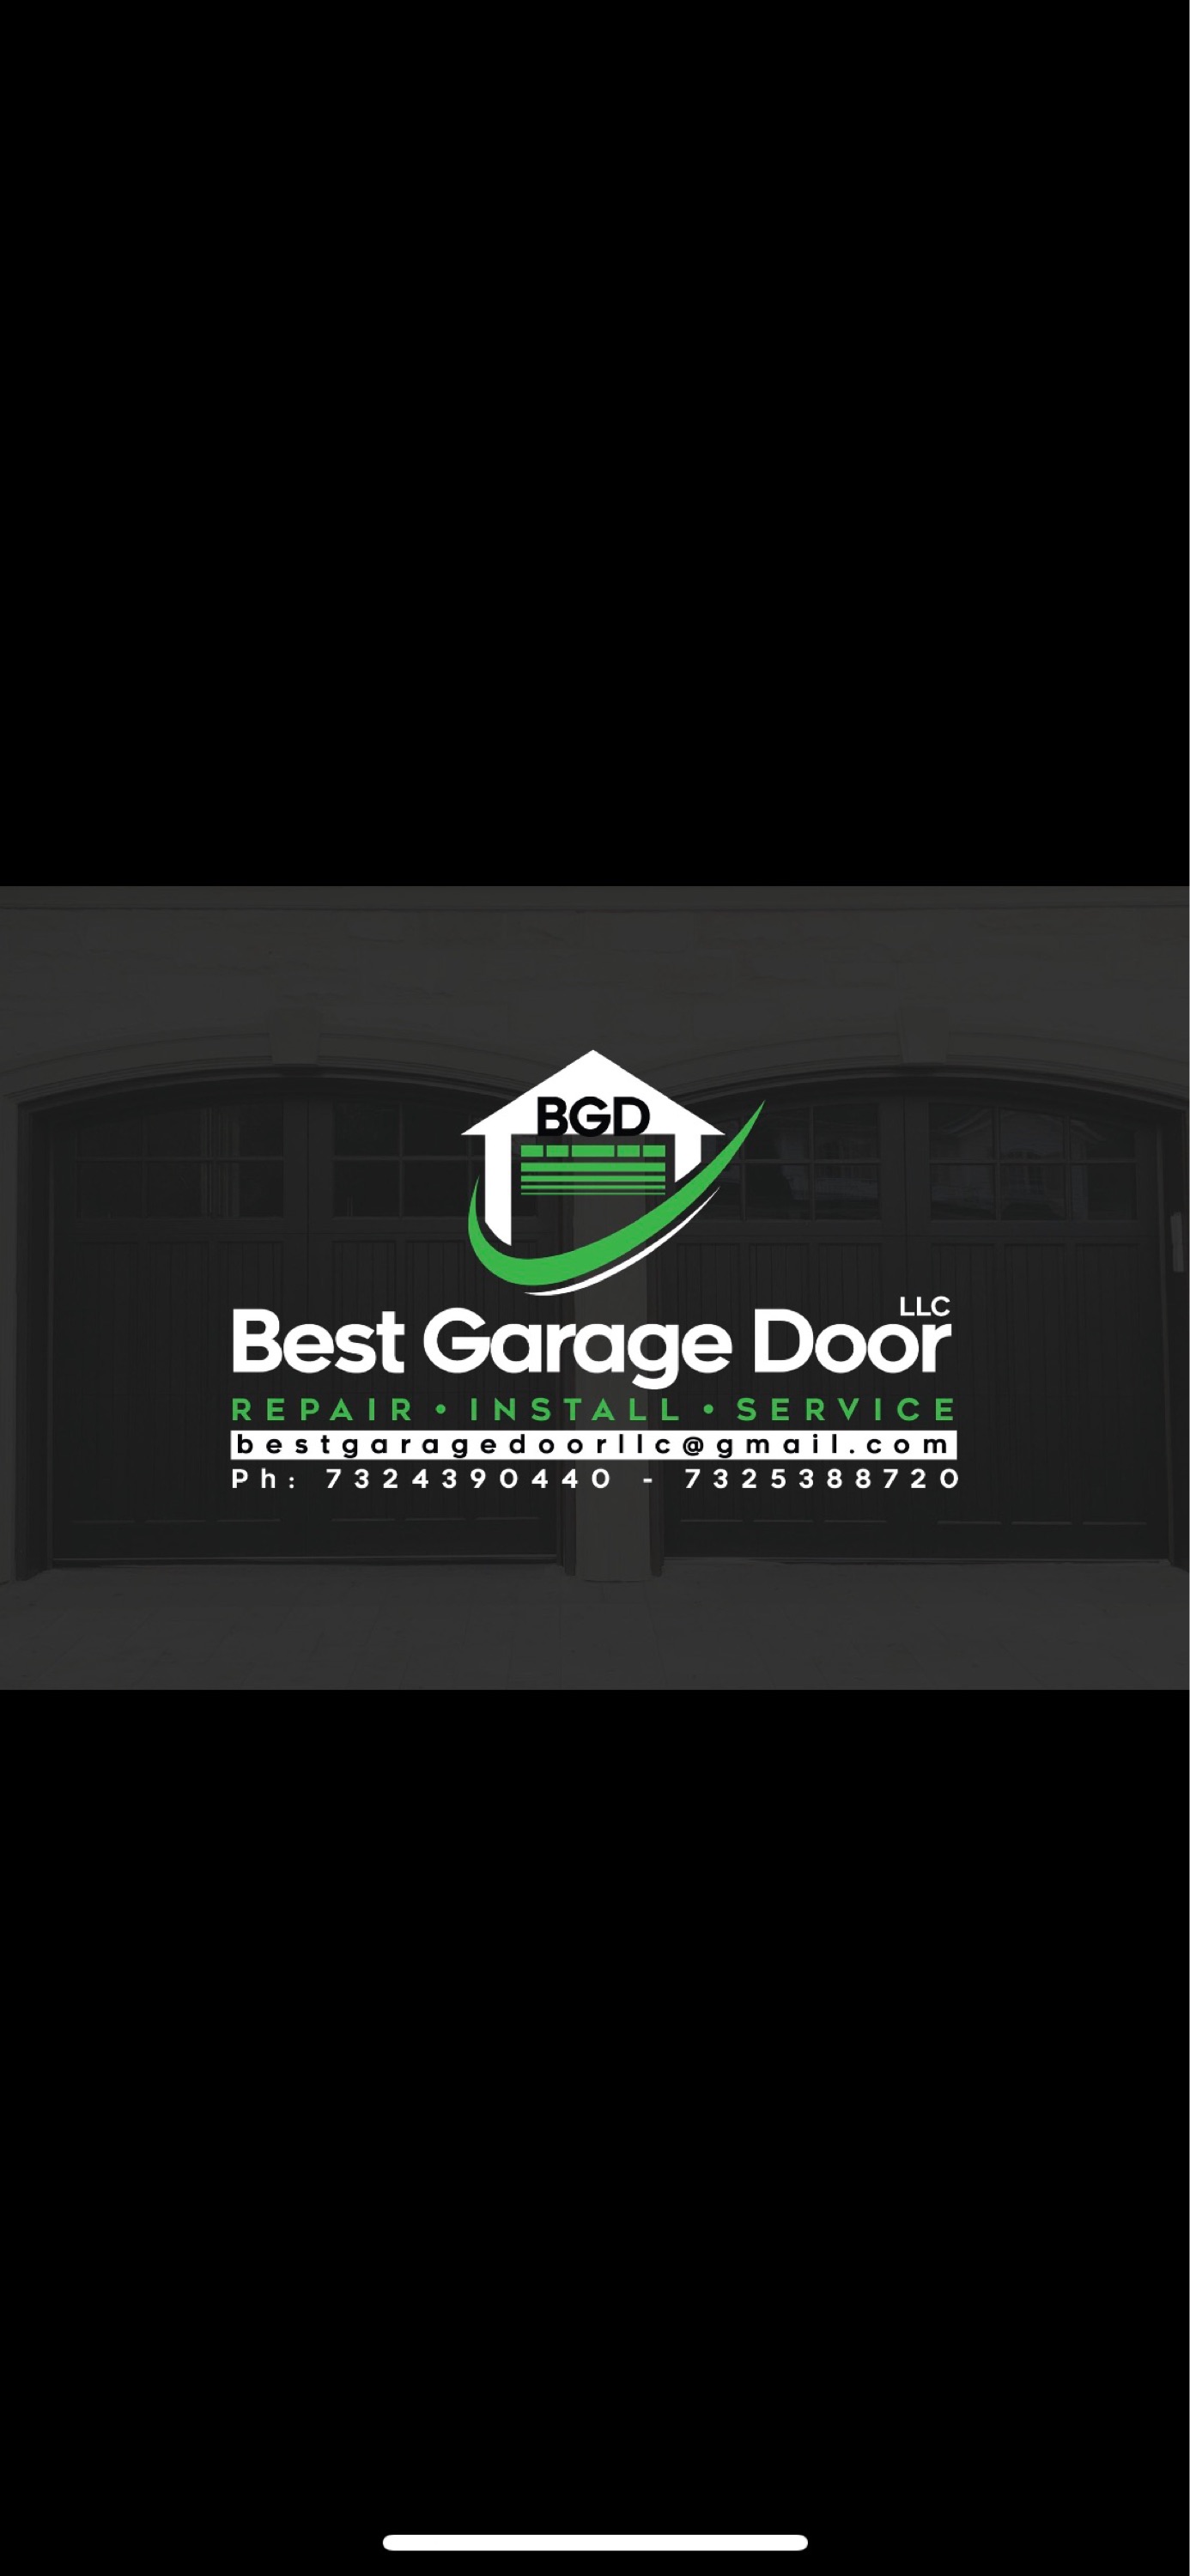 Best Garage Door LLC Logo